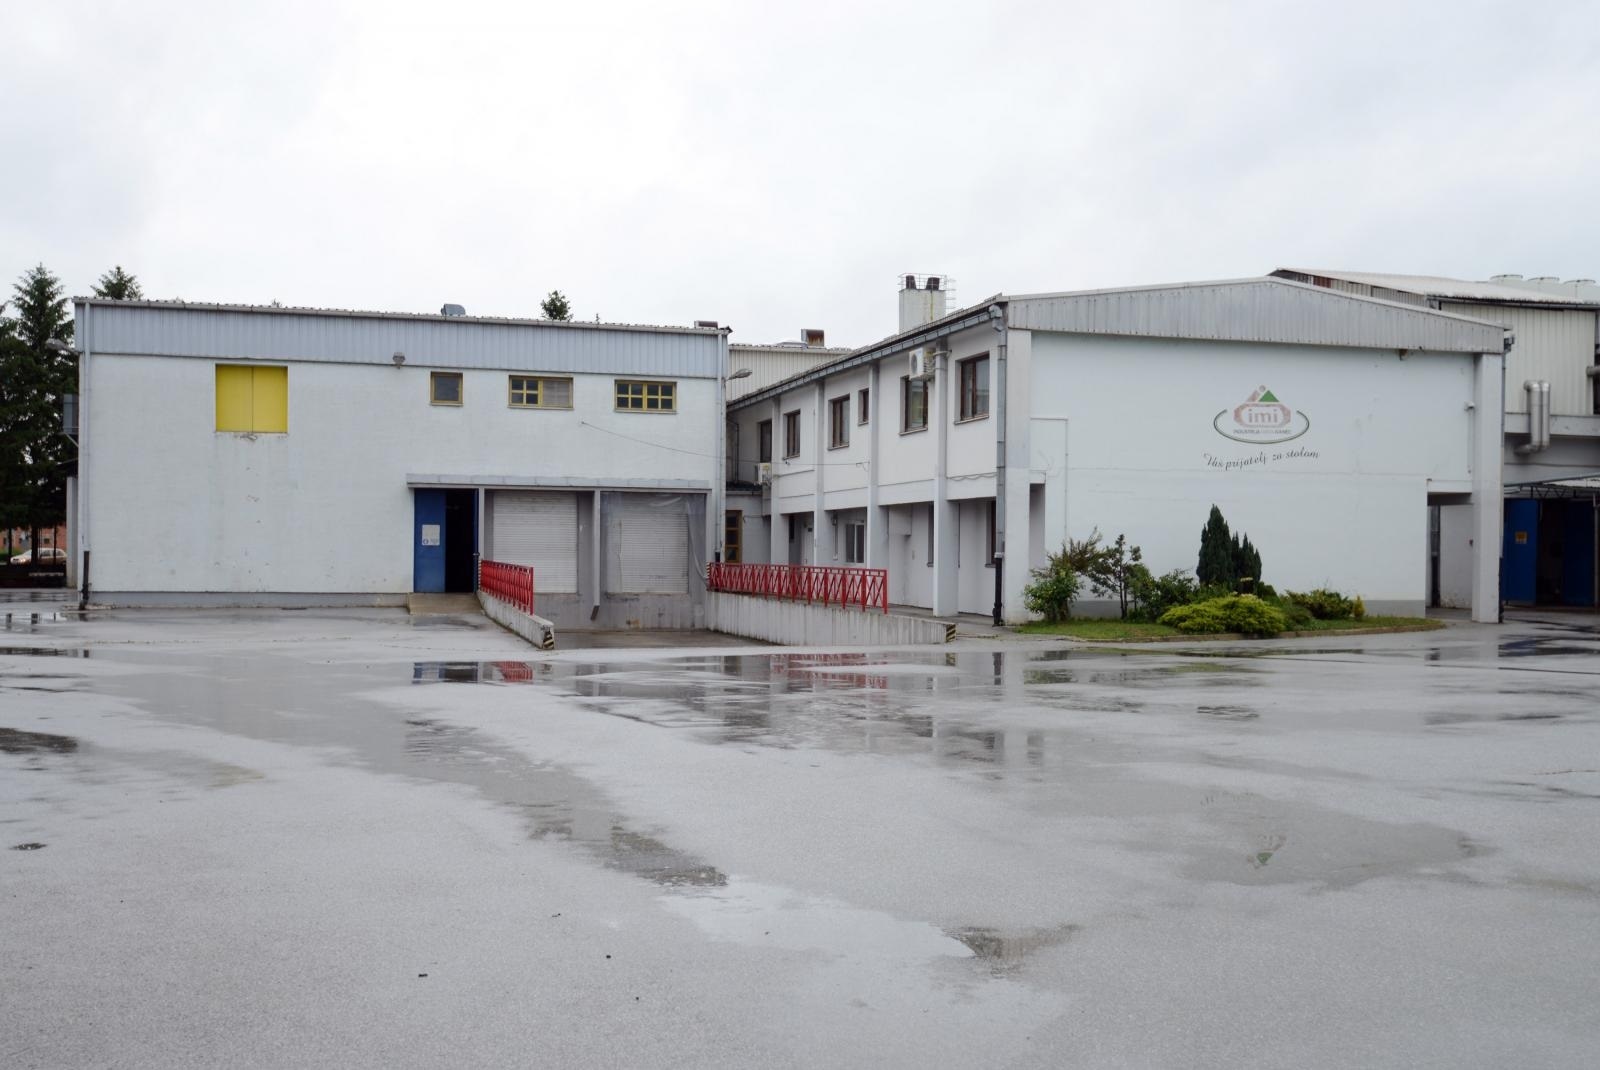 21.05.2015., Ivanec - Propala tvornica Mesna industrija Ivanec. 
Photo: Marko Jurinec/PIXSELL